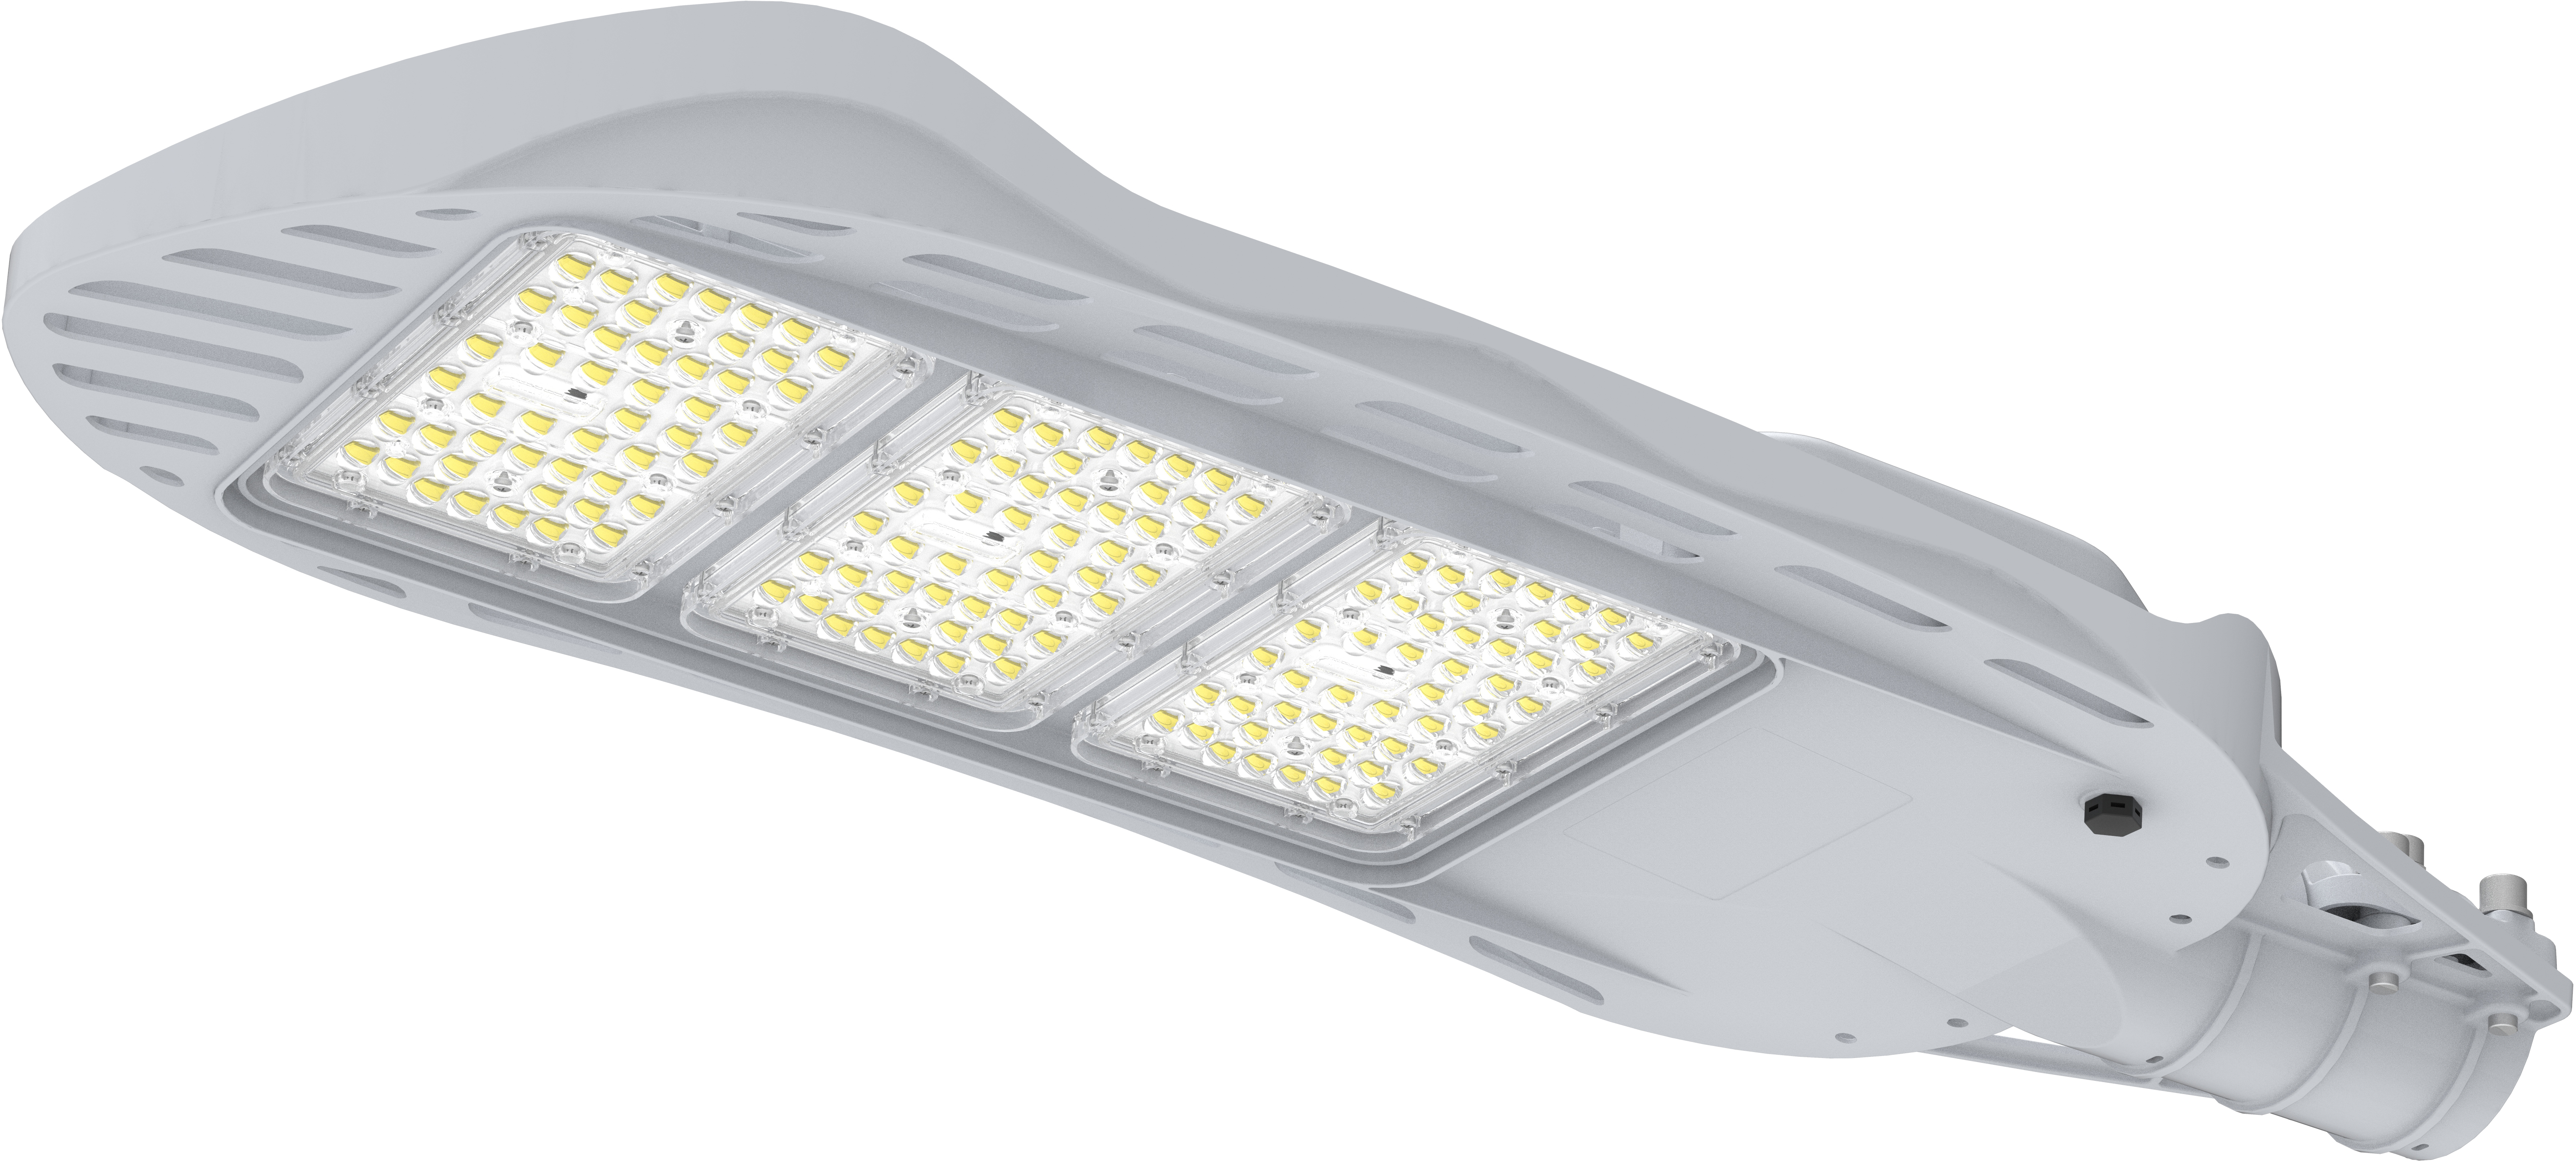 Lampadaire LED série RM-3 modules